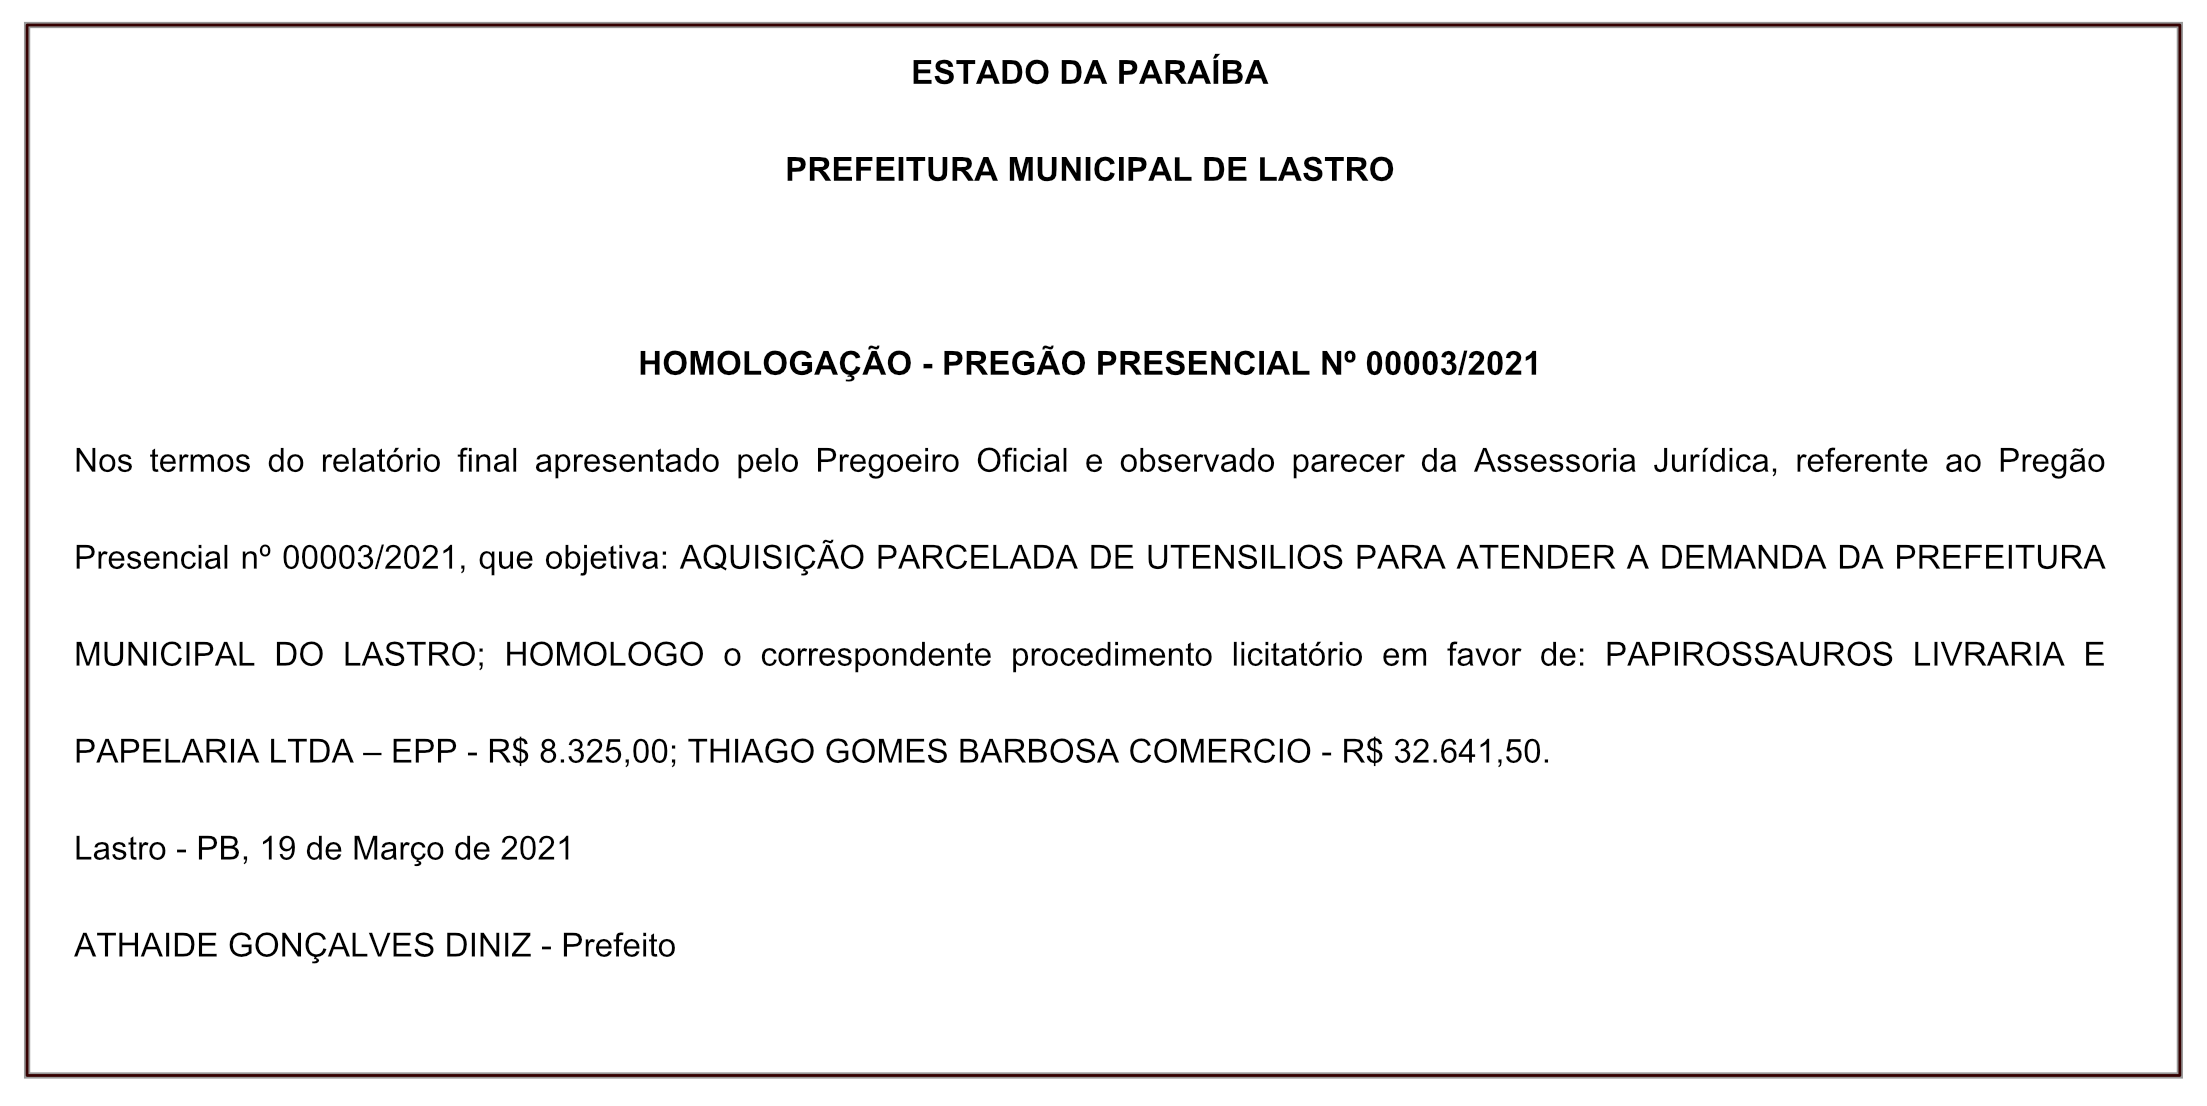 PREFEITURA MUNICIPAL DE LASTRO – HOMOLOGAÇÃO – PREGÃO PRESENCIAL Nº 00003/2021